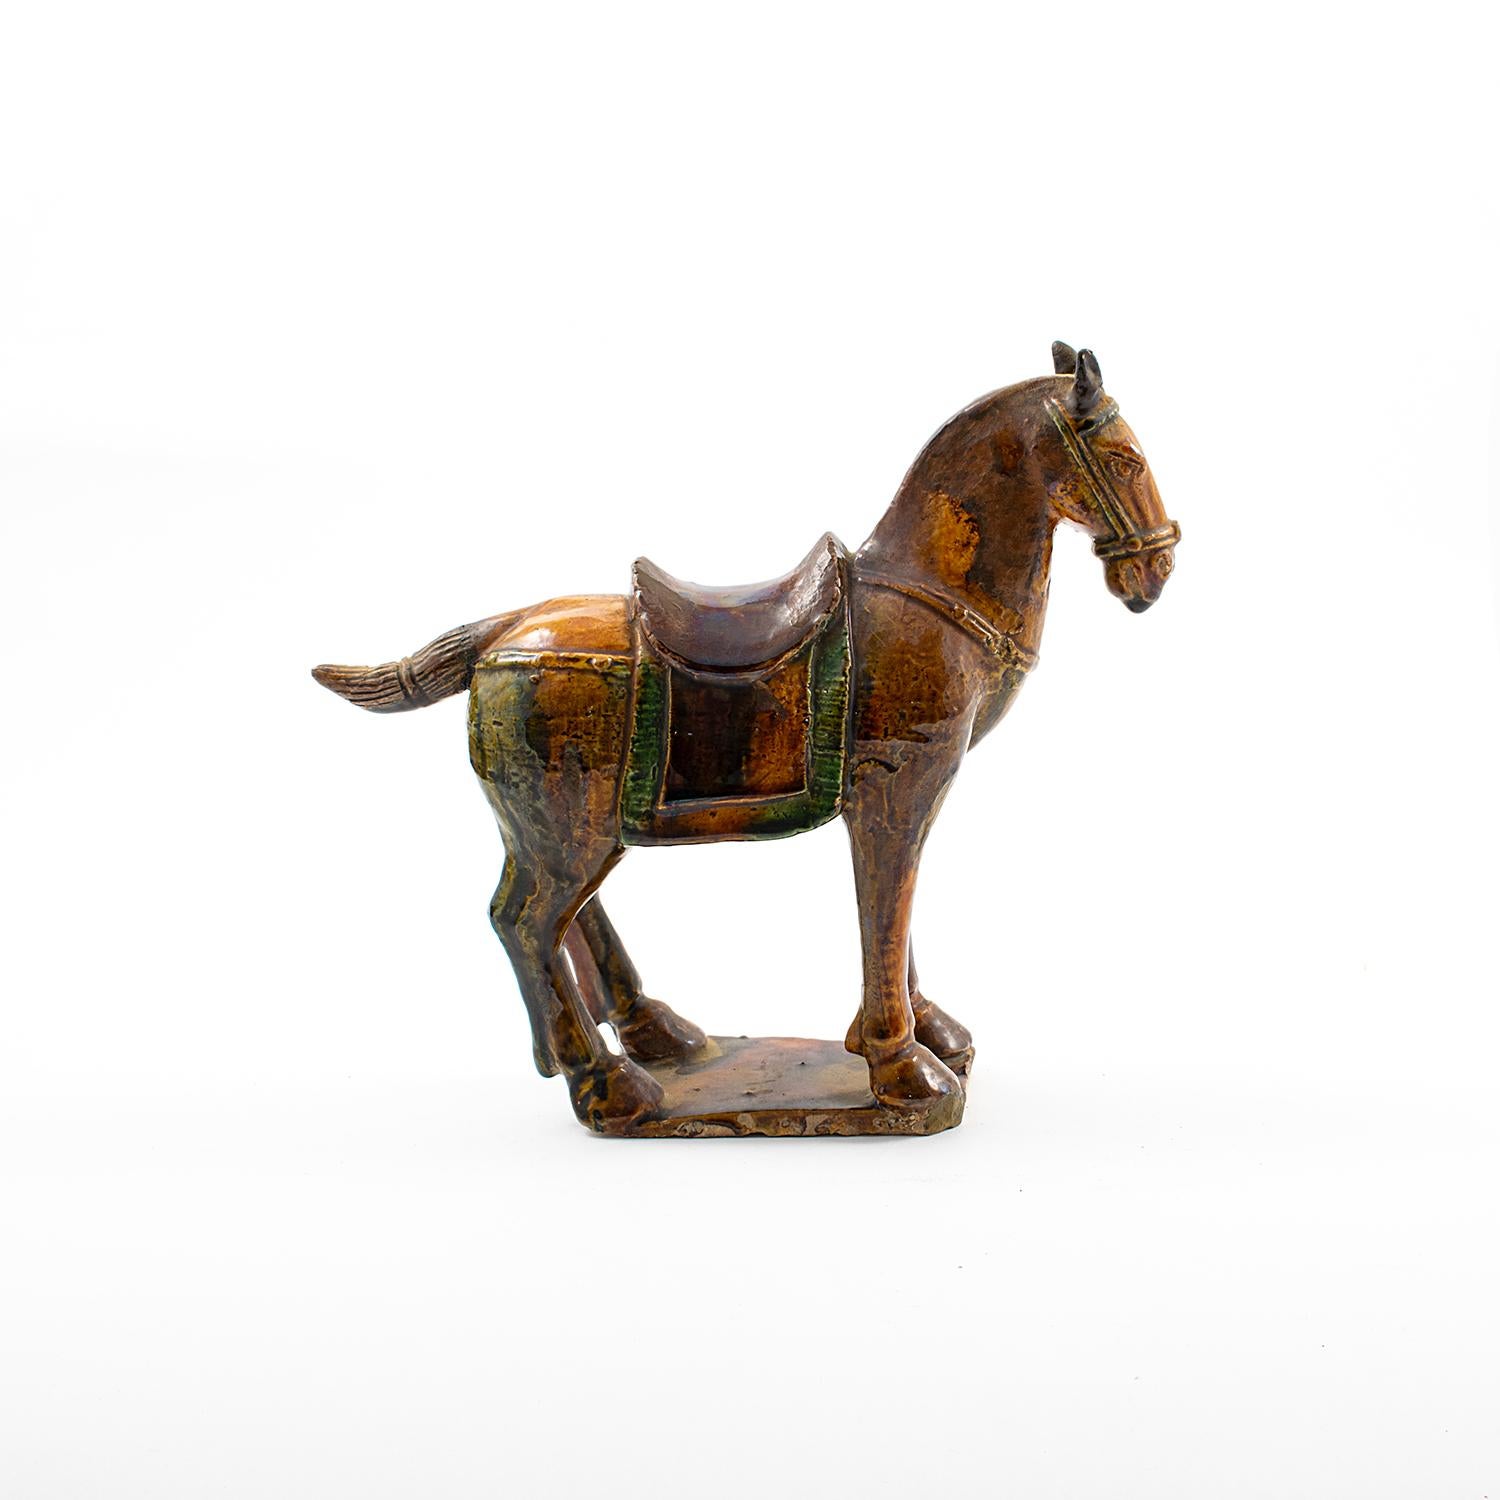 Élégante figurine en poterie chinoise de la dynastie Ming représentant un cheval dans une pose debout avec une finition polychrome (aubergine, brun clair et vert).
Période de la dynastie Ming, datée de 1386-1644 A.D. Livré avec un certificat